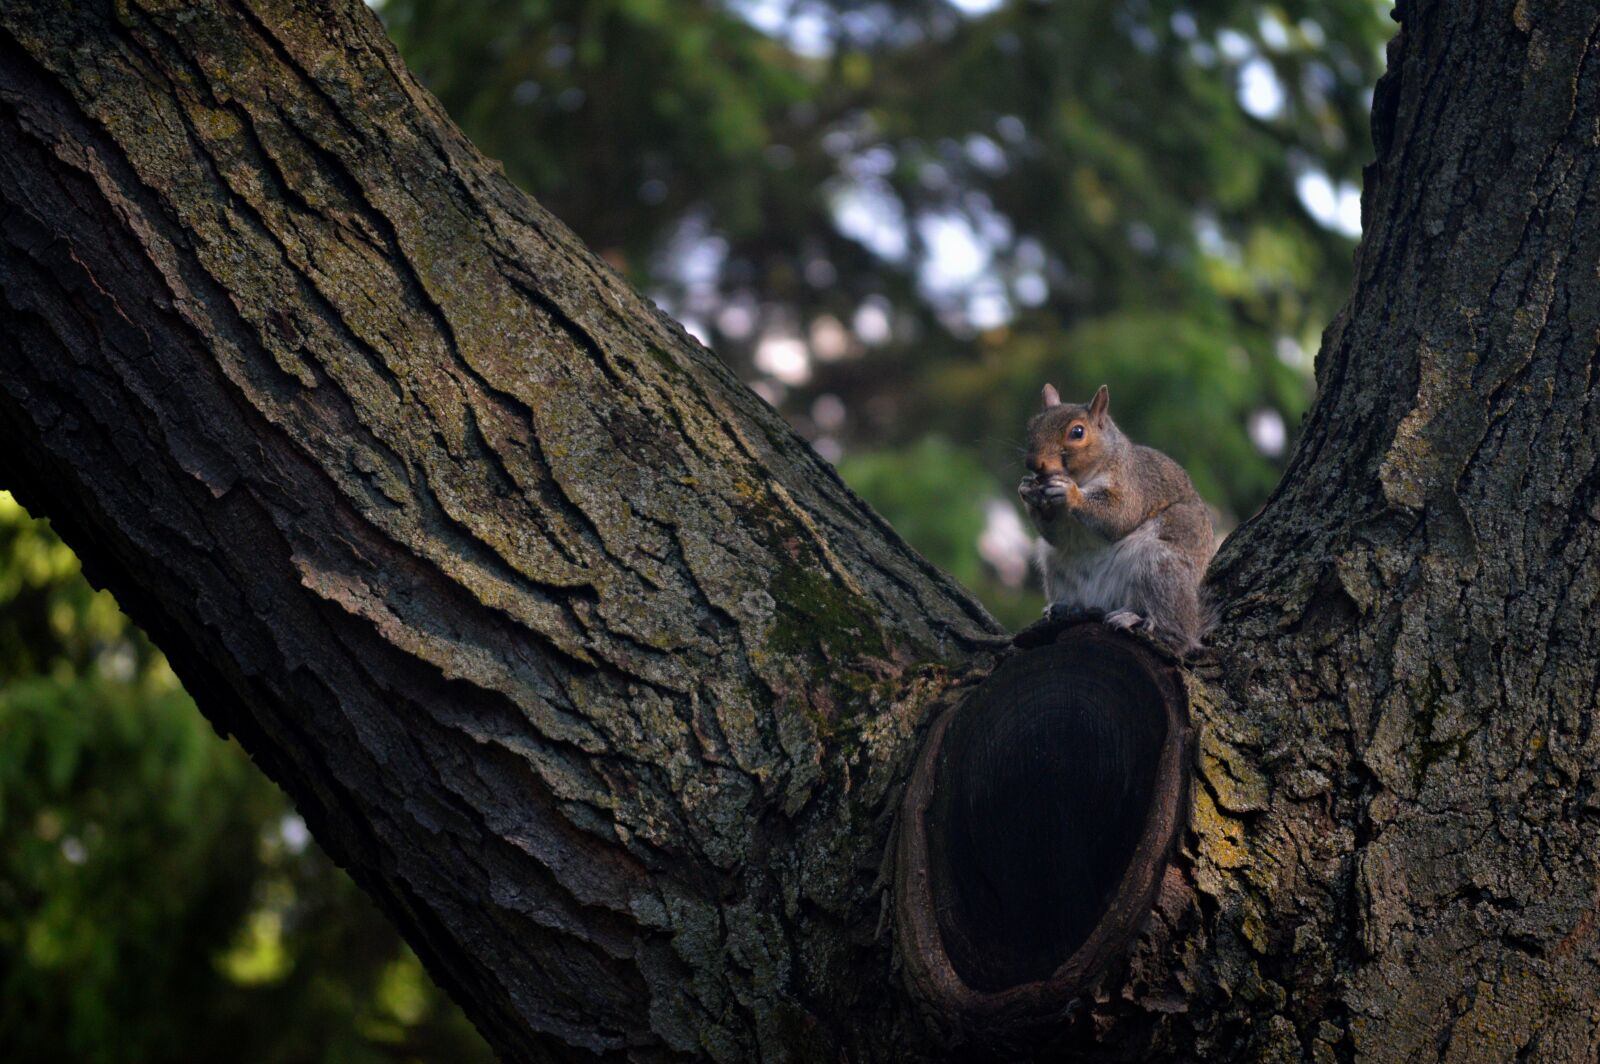 Nikon AF-S DX Nikkor 55-200mm F4-5.6G VR sample photo. Animal, nature, squirrel, tree photography